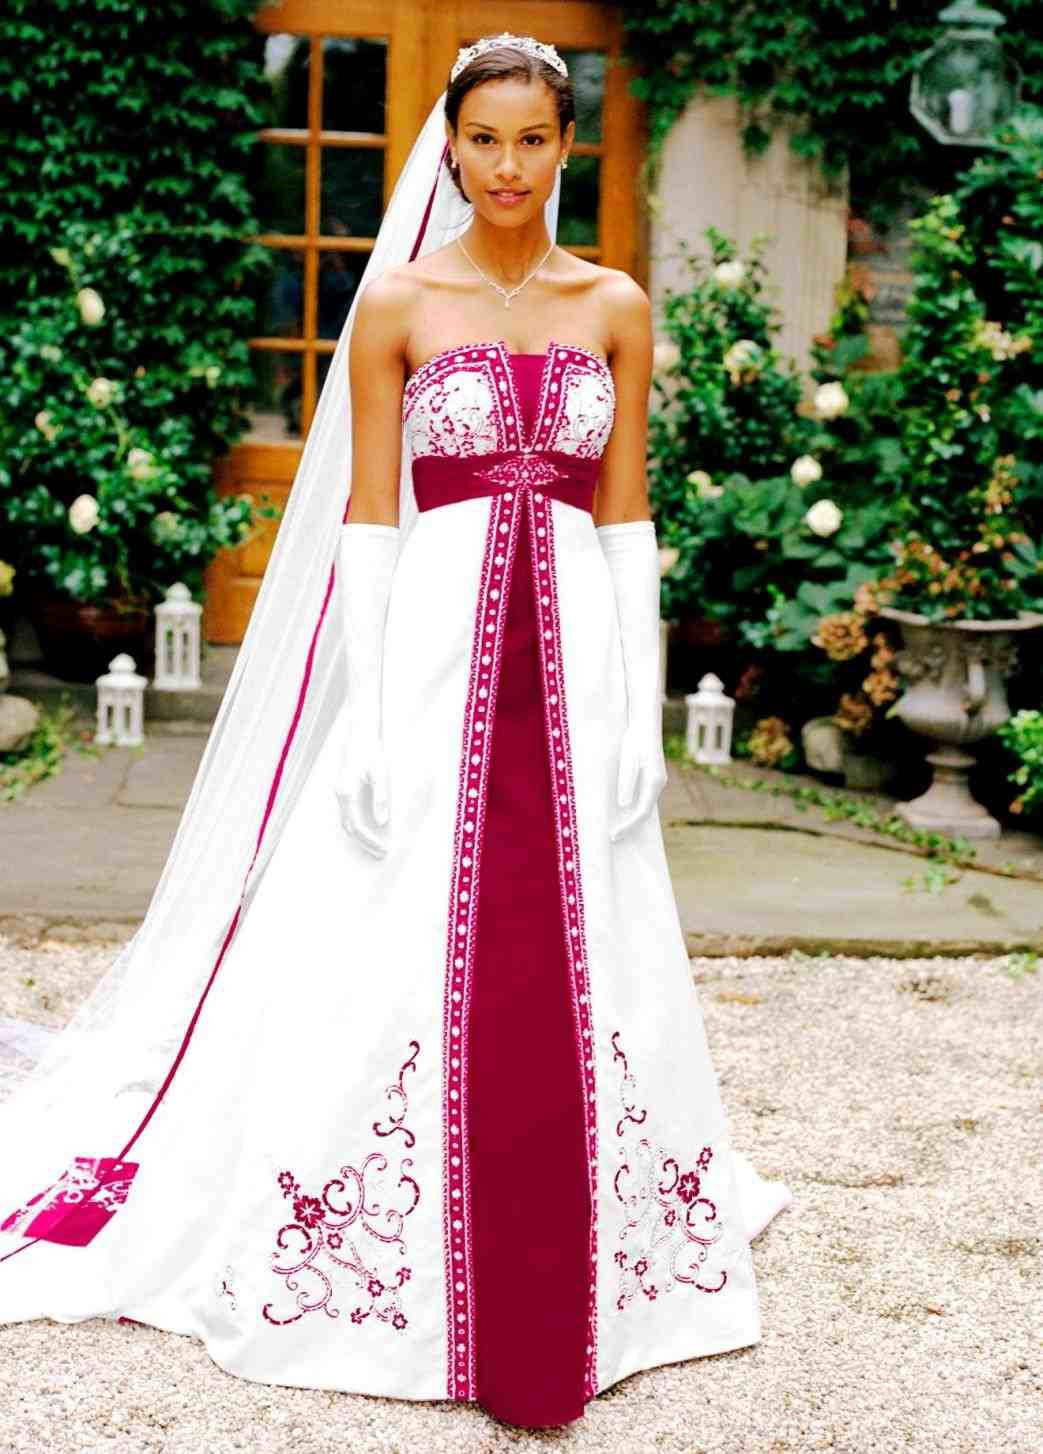 Unique Wedding Dresses With Color
 dress unique wedding dresses with color in striking s shop